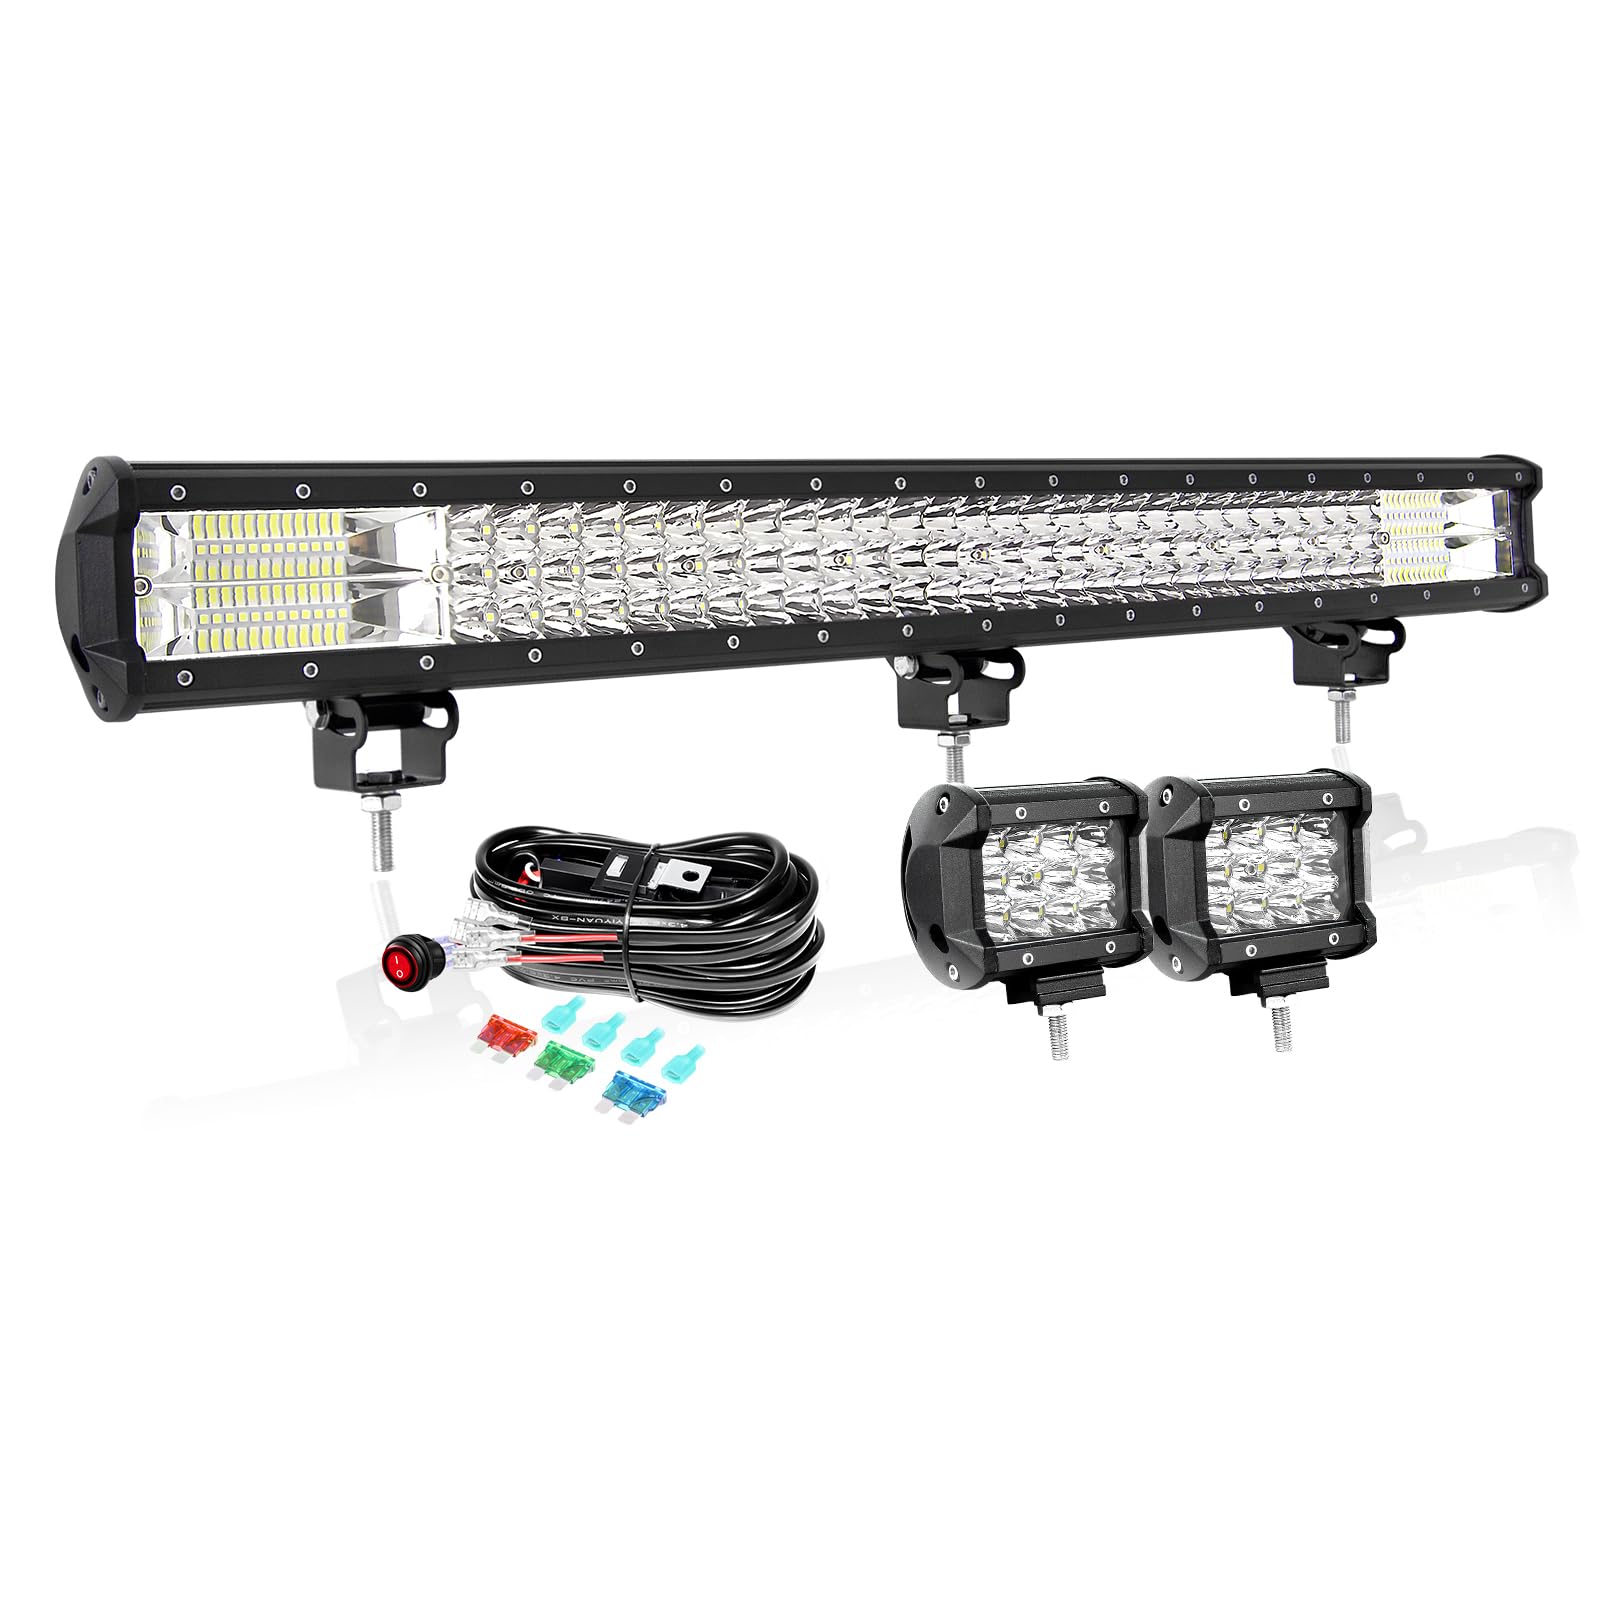 PICAA 28 Zoll 396W LED Lightbar+2x 4 36W LED Arbeitsscheinwerfer+Kabelbaum Kit, Tri-Reihen Led Lichtbalken 12V 24V Auto Offroad 4x4 Zusatzscheinwerfer Flutlicht Spotlight von PICAA